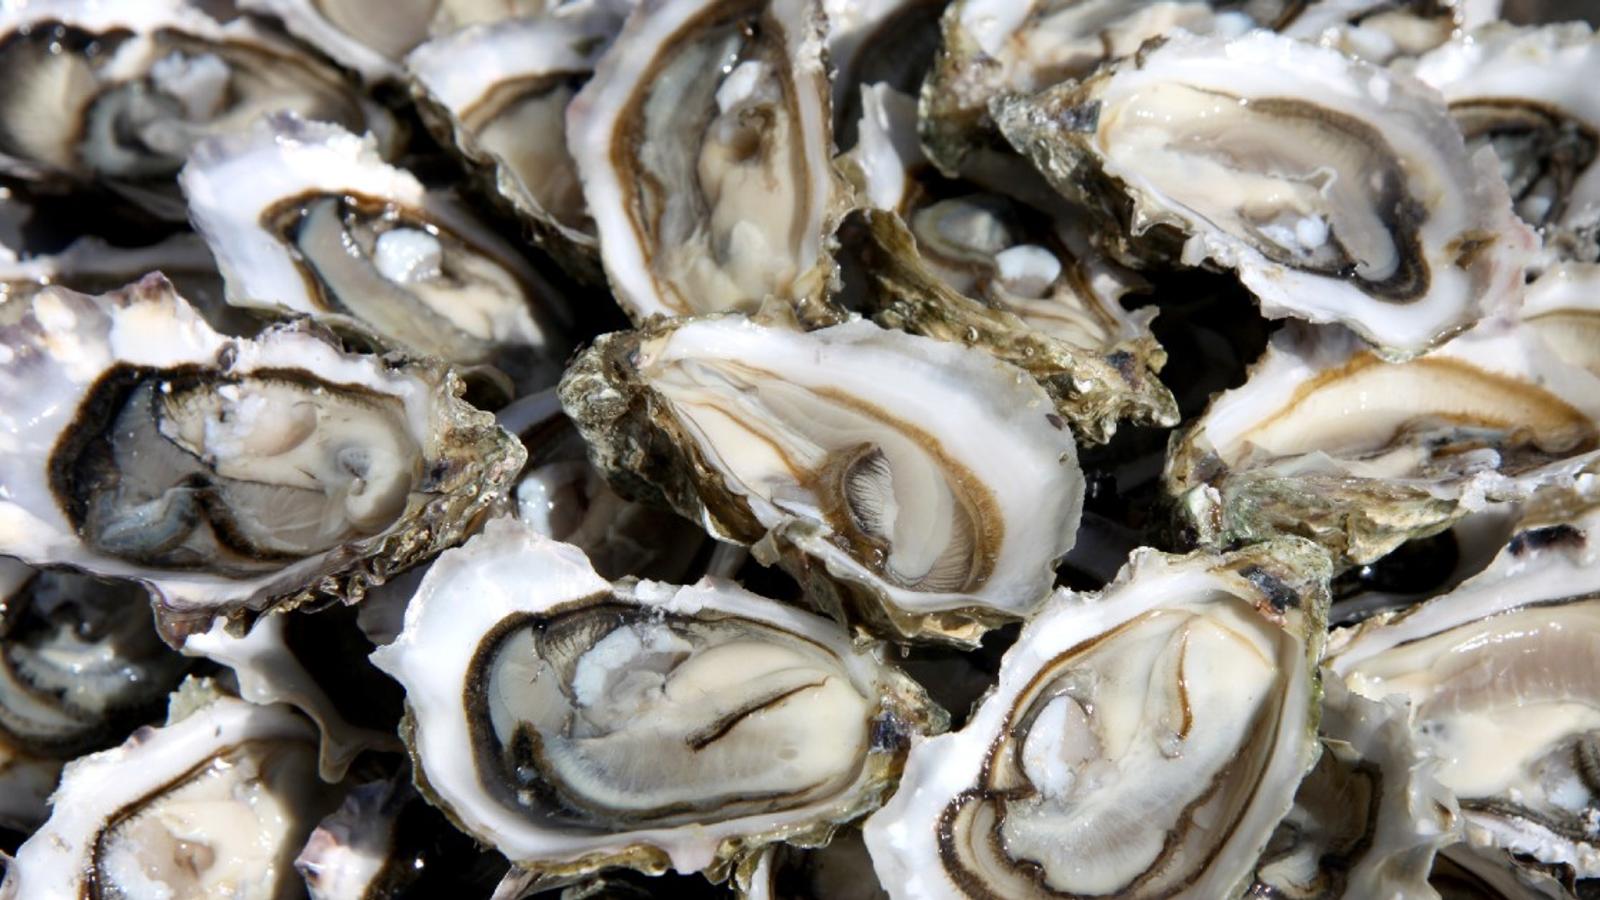 Des huîtres contaminées par l’épidémie de gastro-entérite